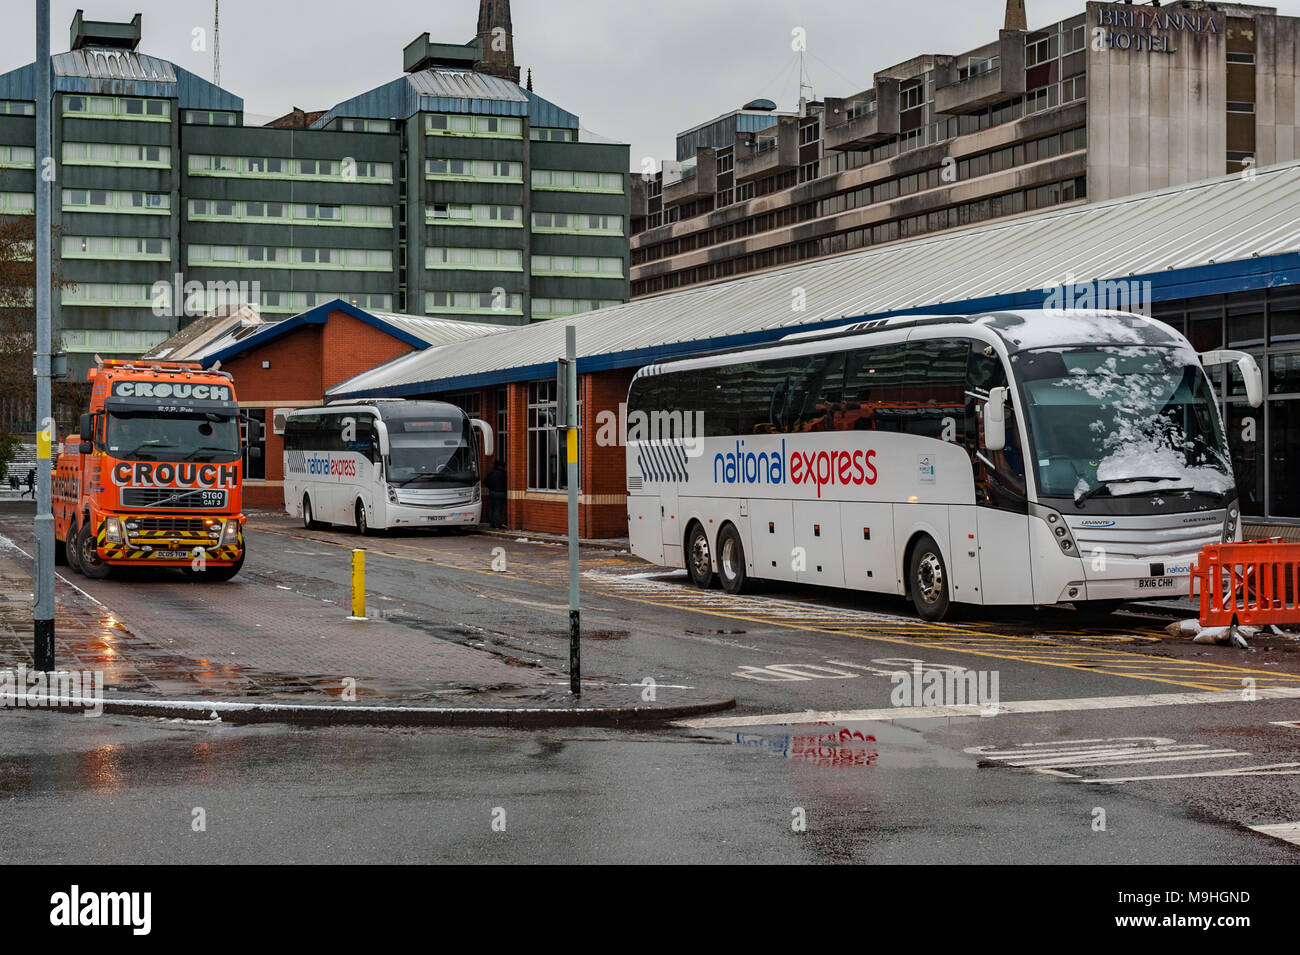 National Express Busse und Schwertransporte Abschleppwagen am Pool Wiese Busbahnhof, Fairfax Street, Coventry, West Midlands, UK. Stockfoto